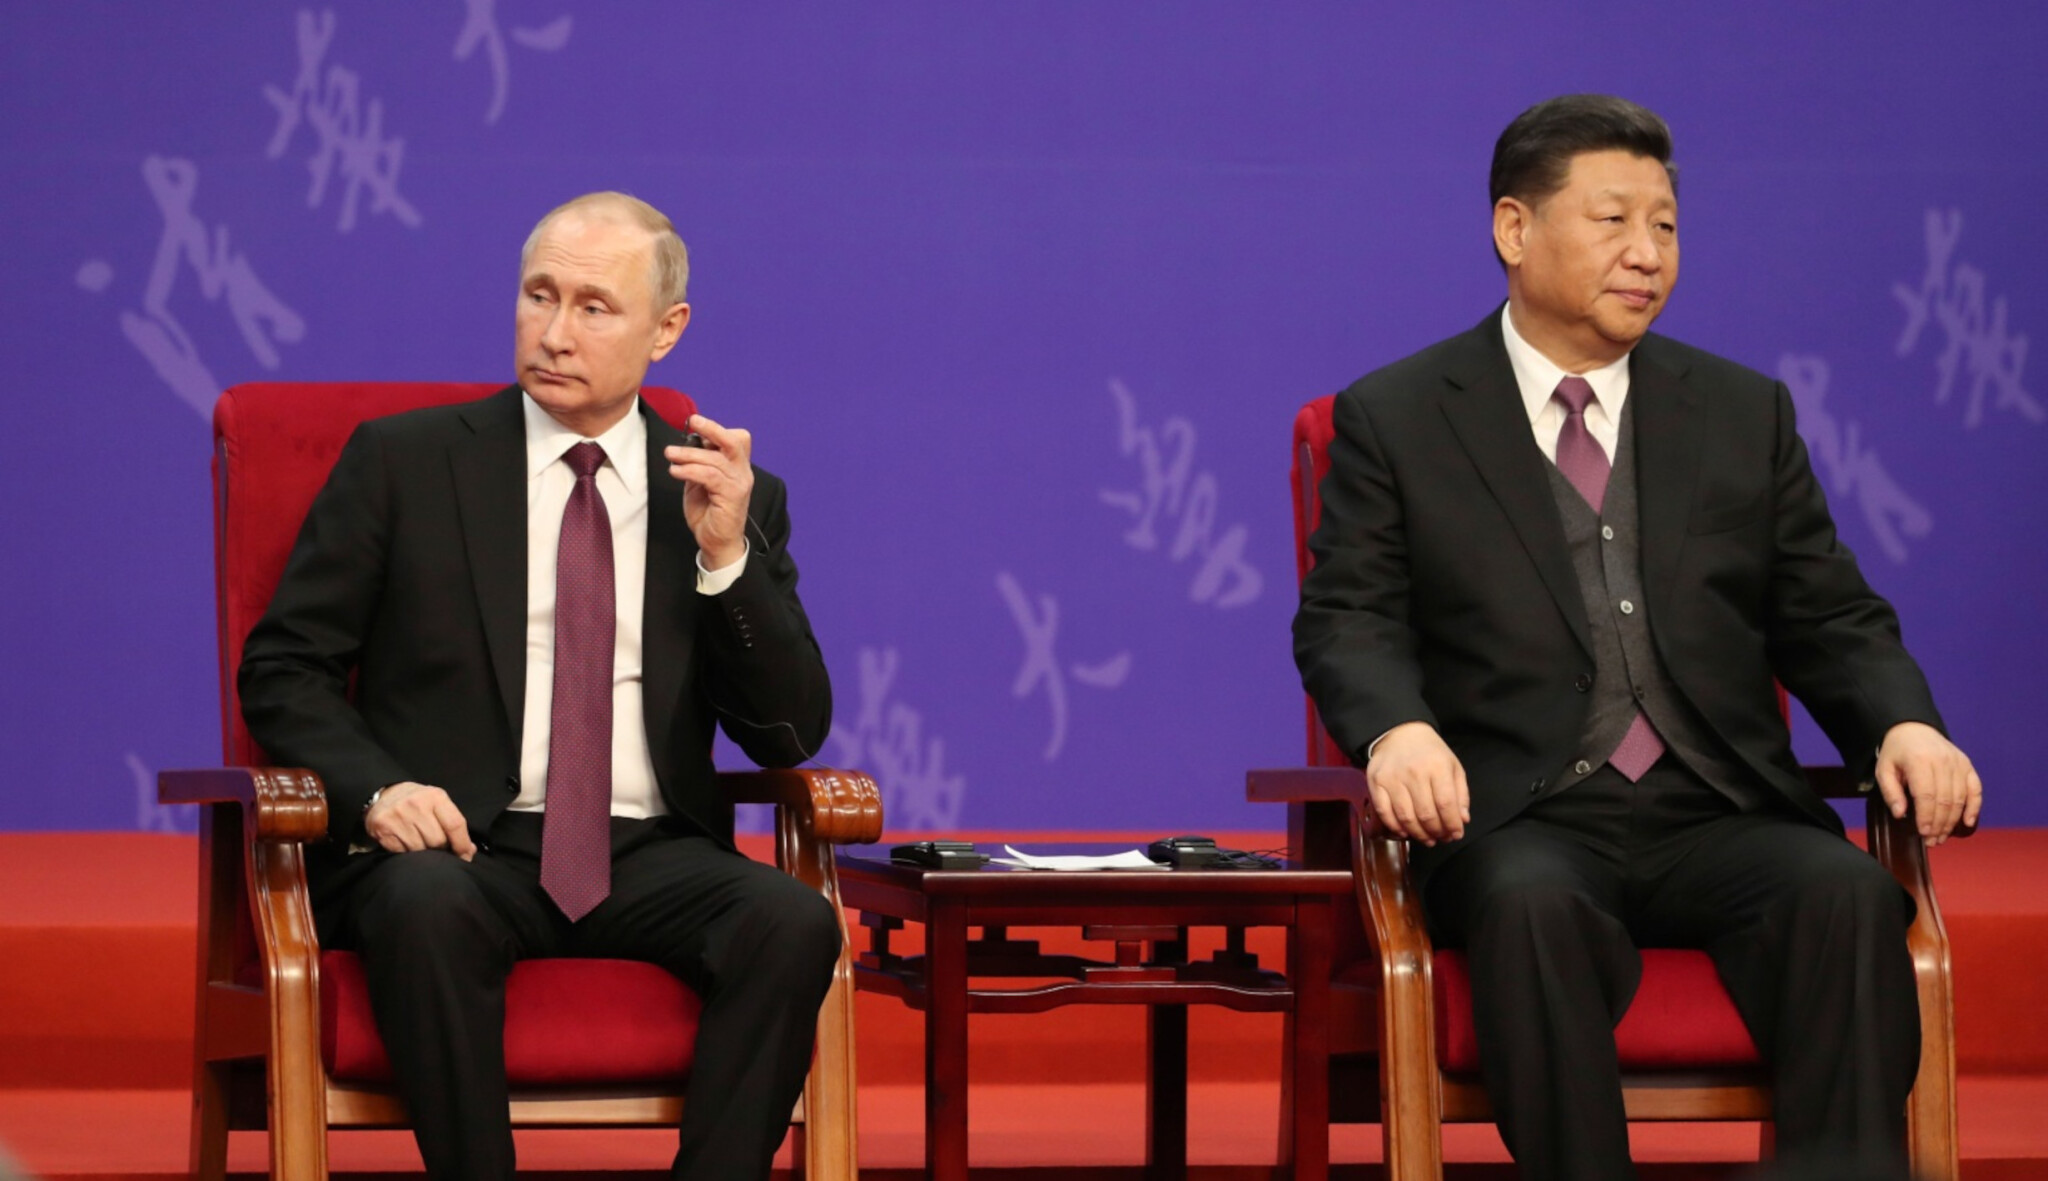 Invaze komplikuje vztahy Ruska a Číny. Srovnávání Ukrajiny s Tchaj-wanem komunisty děsí, píše sinoložka